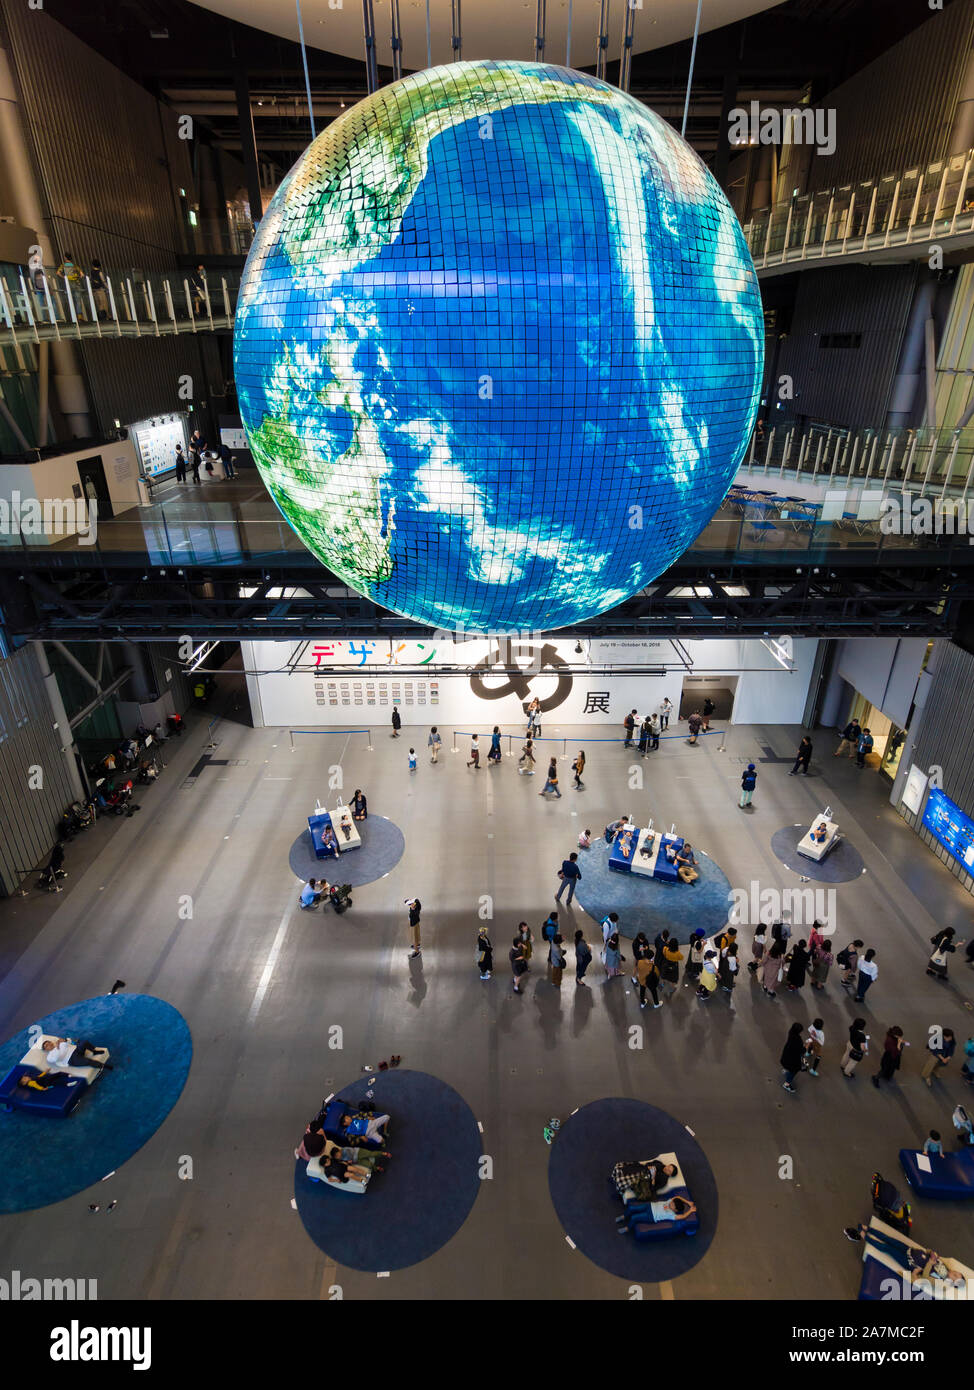 Tokyo, Giappone - 12 OTT 2018: Geo-Cosmos, un gigantesco globo hanging off il soffitto presso la sala principale di Tokyo's Miraikan technology museum. Foto Stock